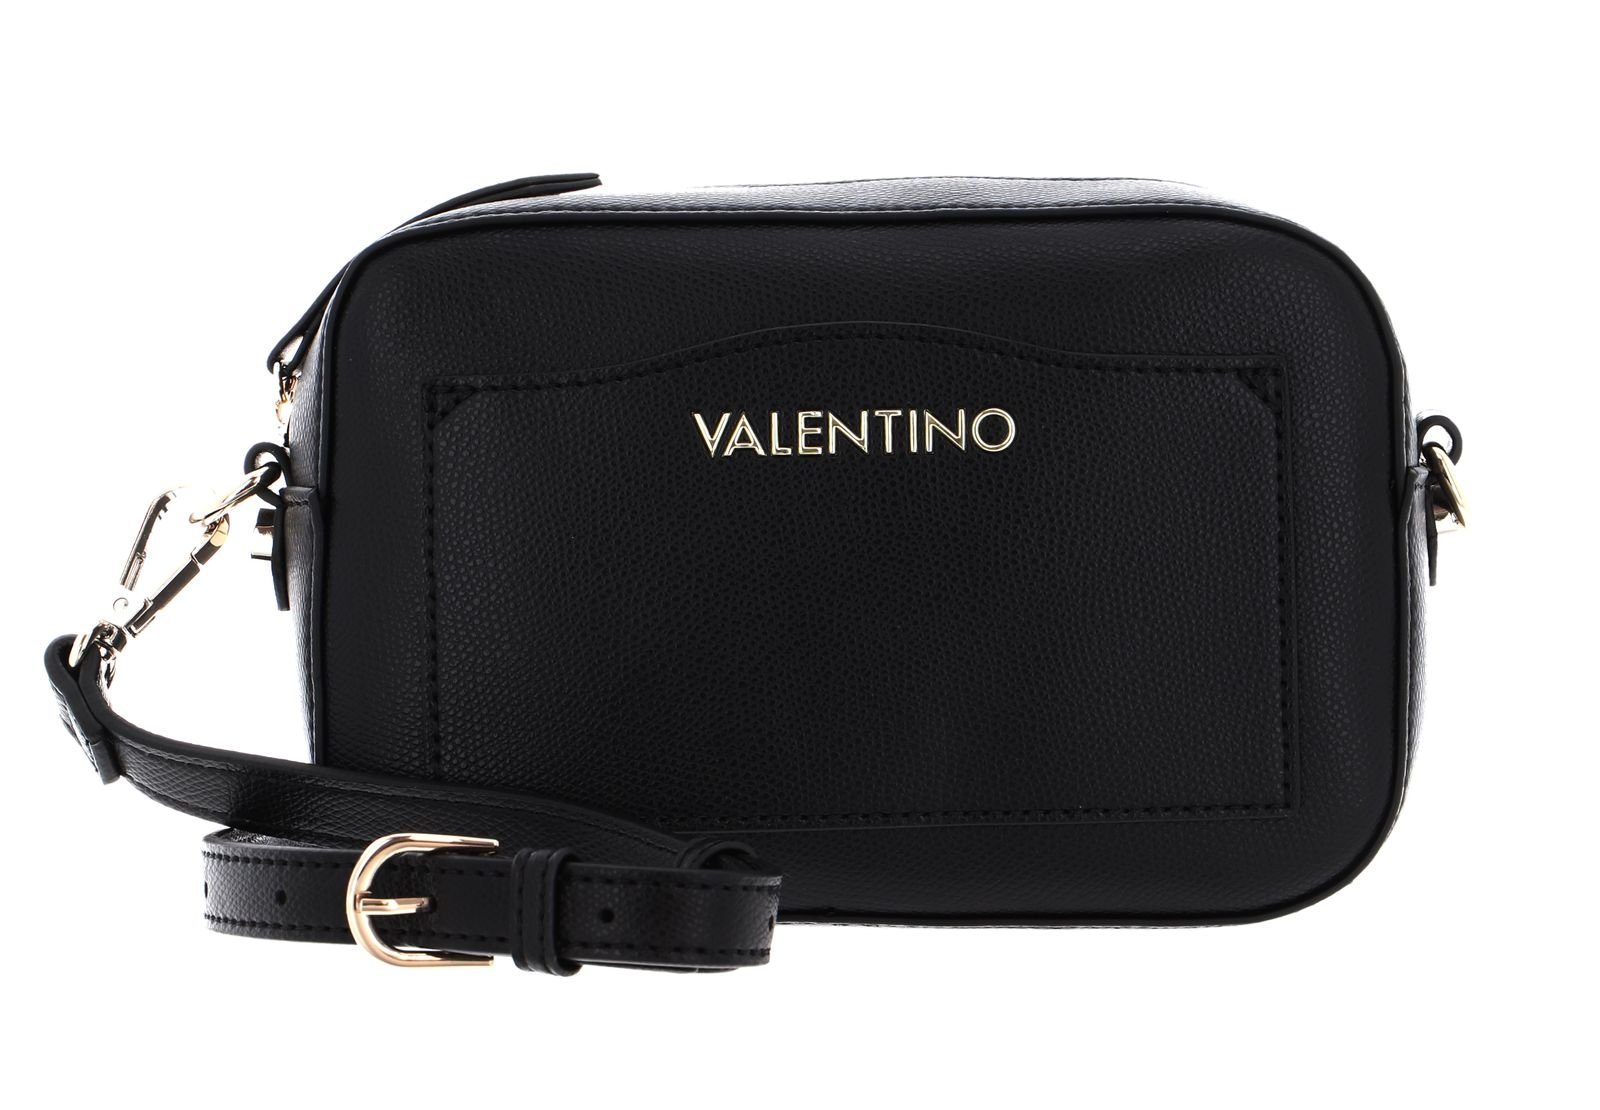 VALENTINO BAGS Umhängetasche »Maple« online kaufen | OTTO